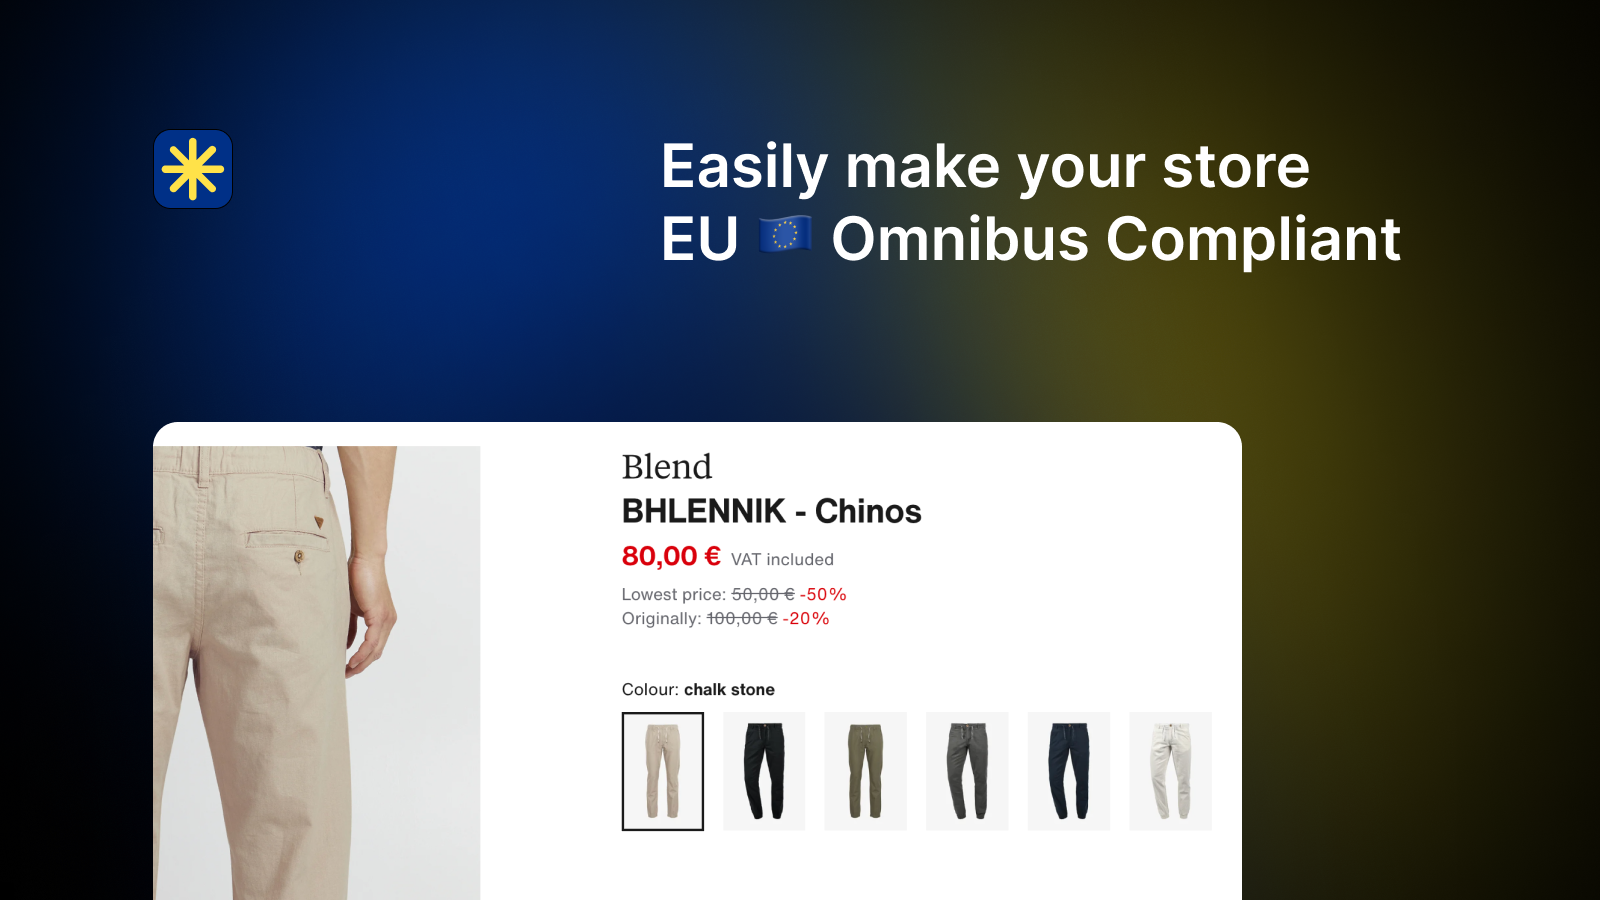 Maak eenvoudig uw winkel EU Omnibus Conform